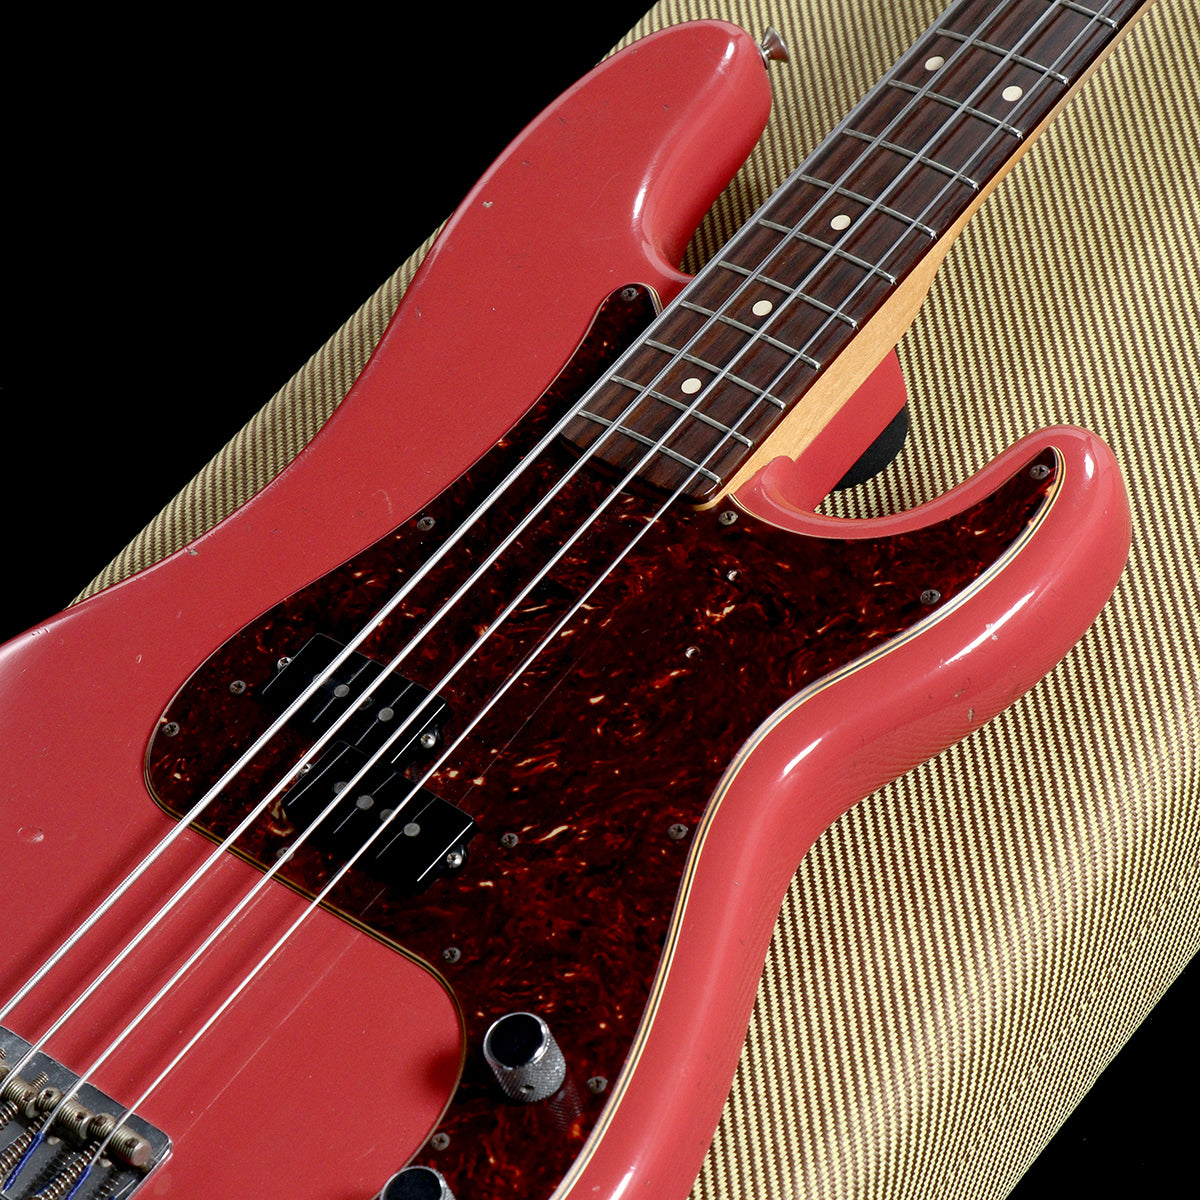 [SN R90155] USED FENDER CUSTOM SHOP / Pino Palladino Signature Precision Bass Fiesta Red Relic 2017 [05]